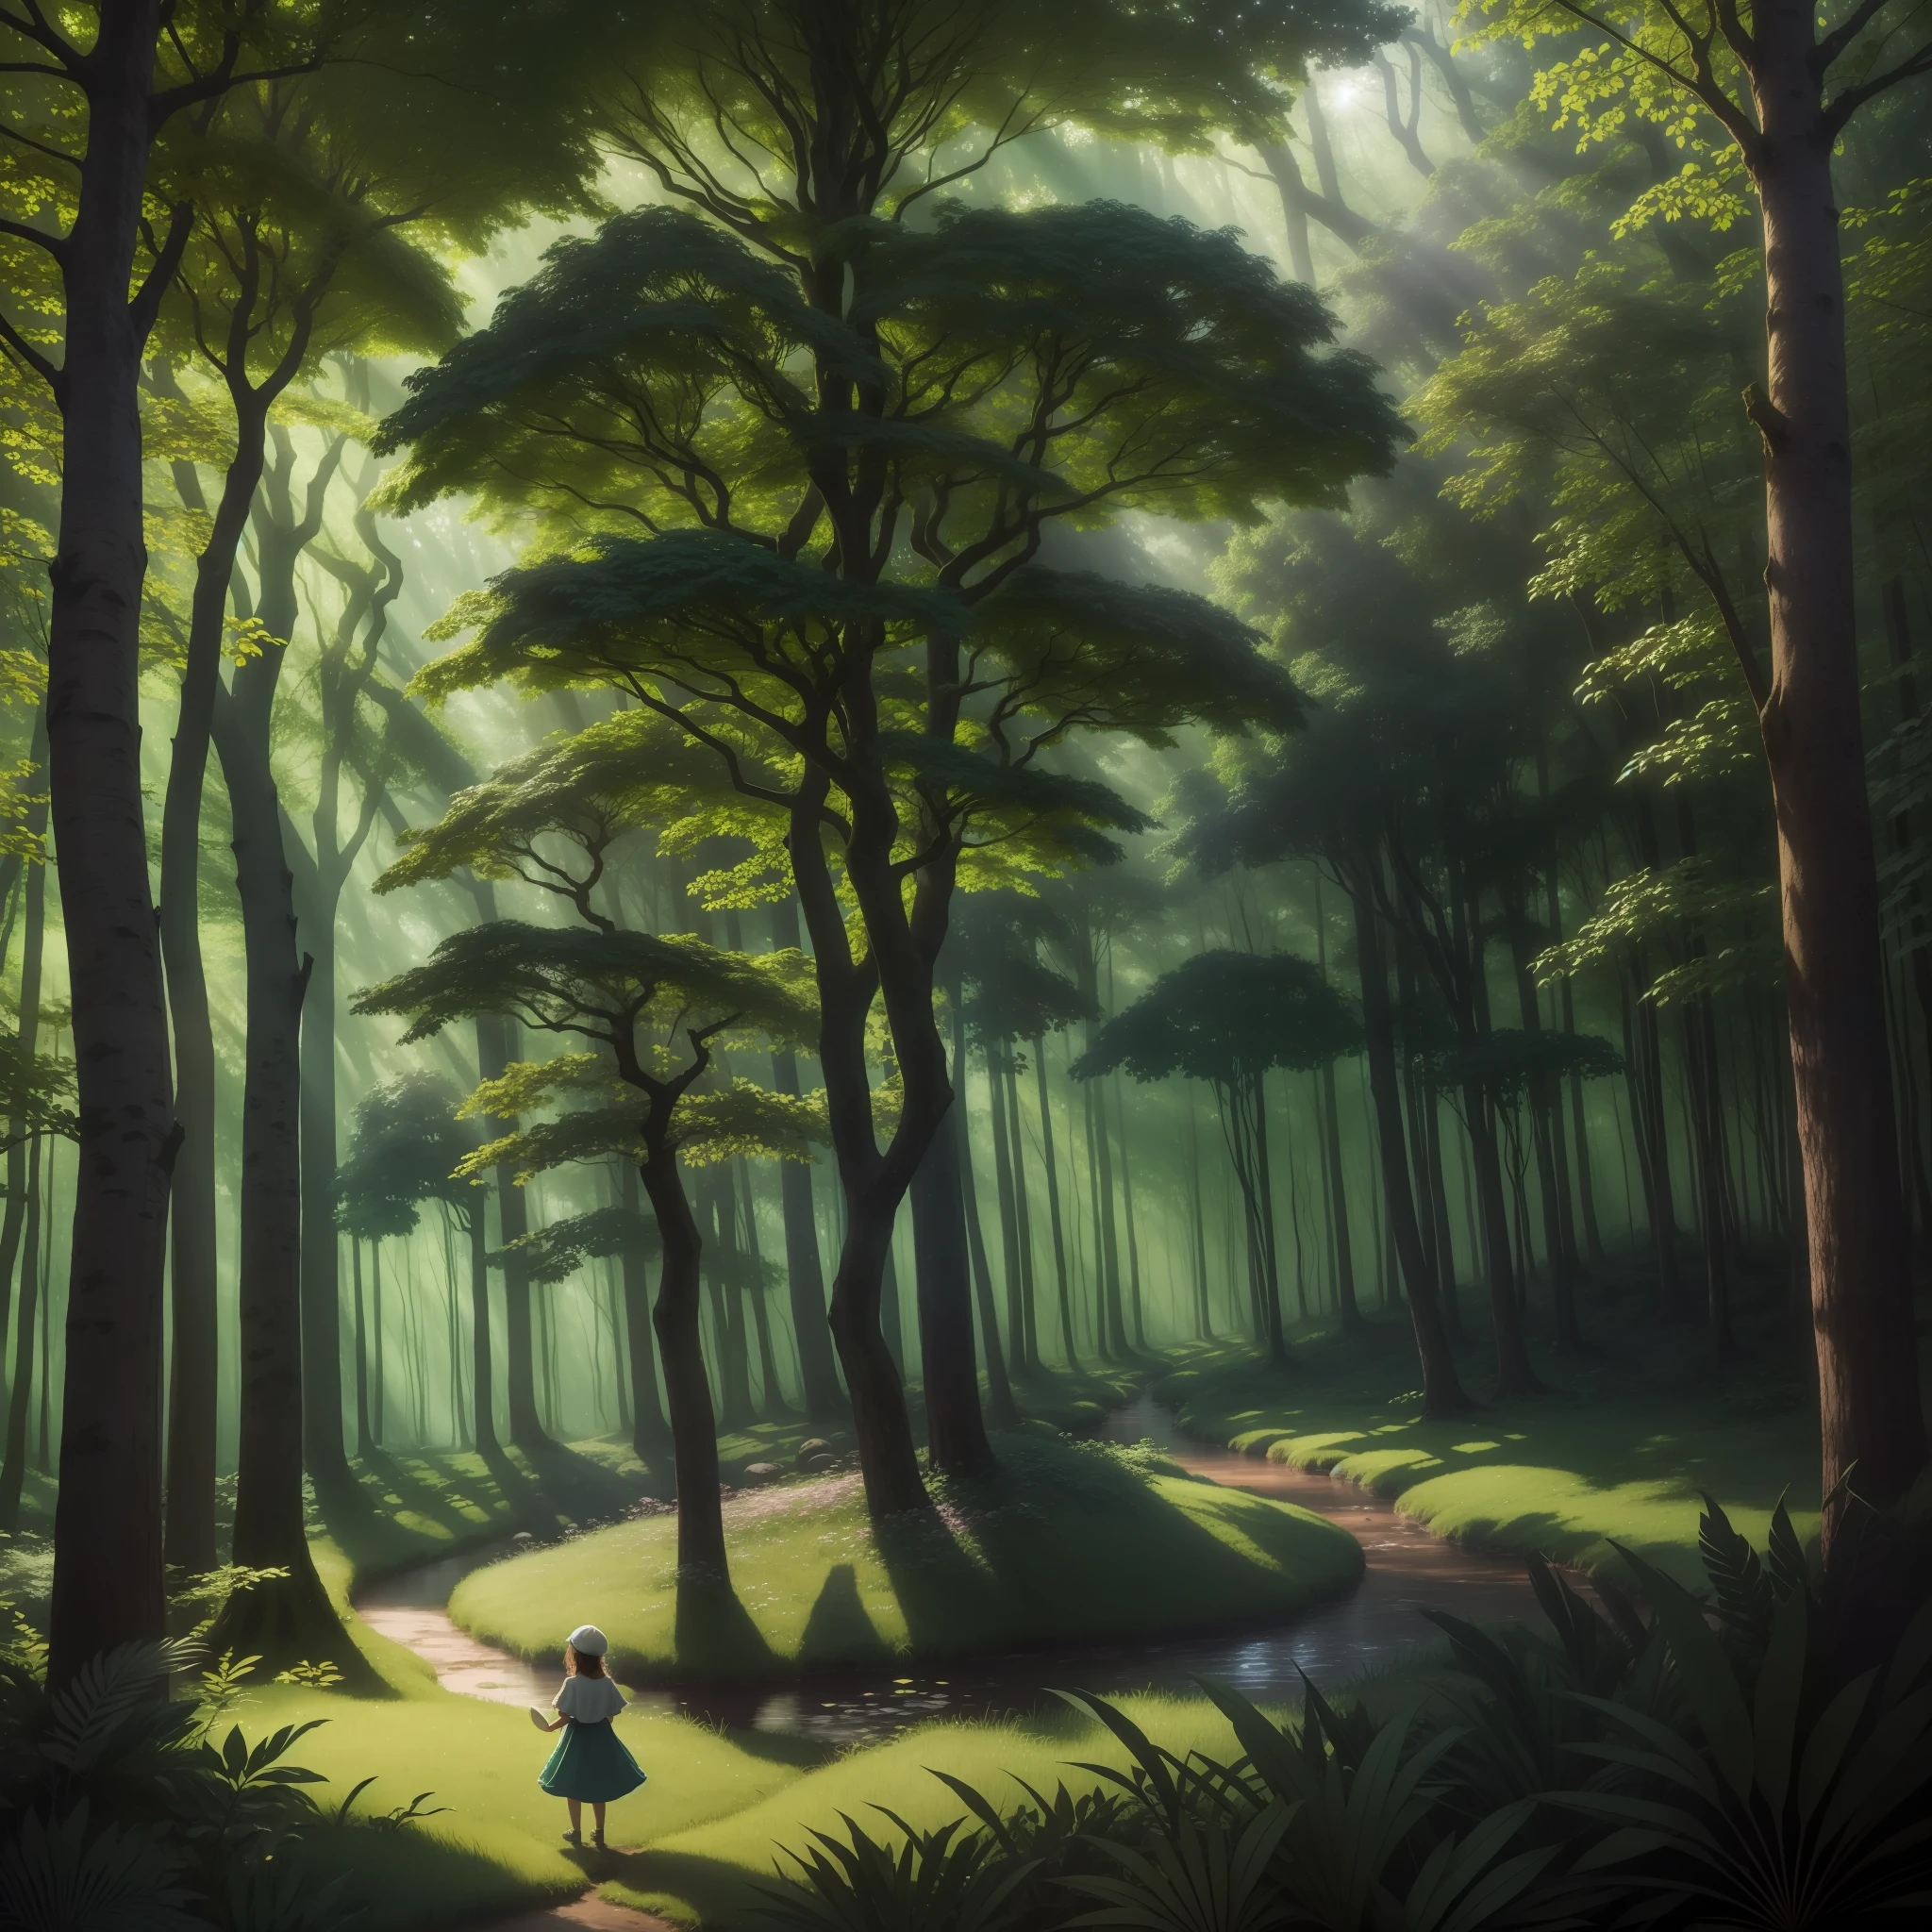 在这张图片中, 一片魔法森林展现出充满神秘色彩的神奇场景. 高大的, 枝繁叶茂的树木形成郁郁葱葱的绿色树冠，巧妙地过滤着阳光, 创造一个宁静而温馨的环境. 在森林的中心, 勇士站在巨人之上